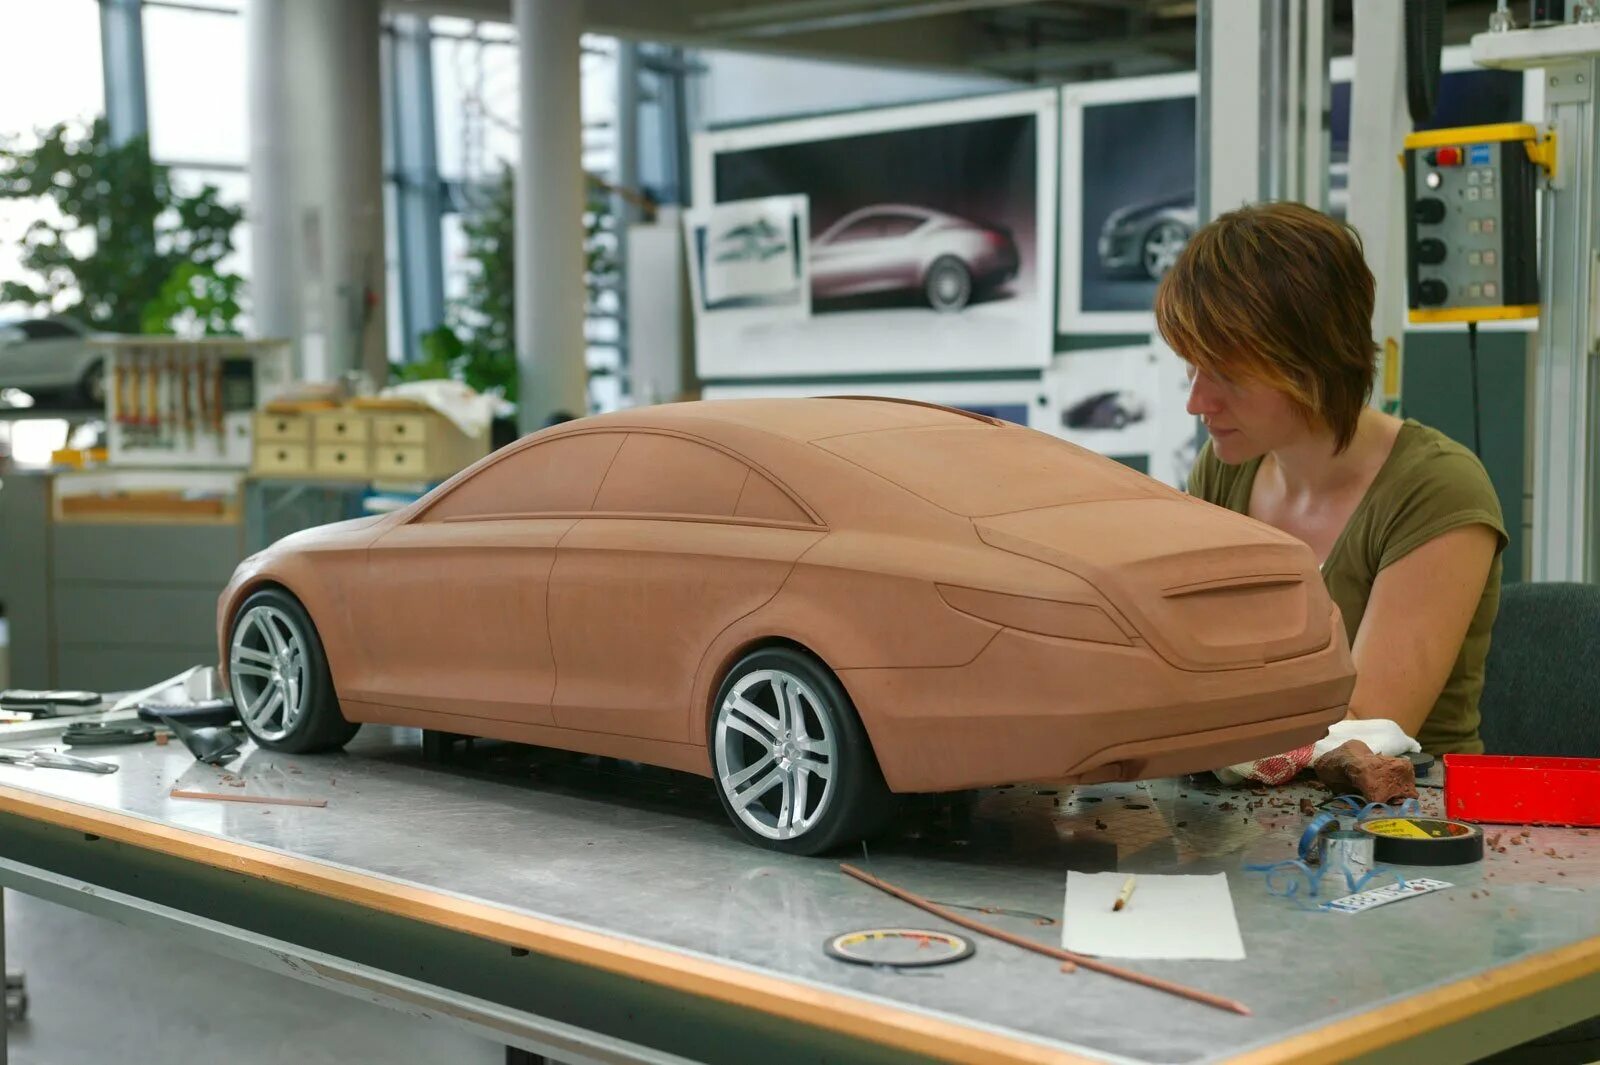 Машина делать собирать. 3d моделирование в автопромышленности. Муляж автомобиля. Пластилиновые макеты автомобилей. Моделирование автомобилей.